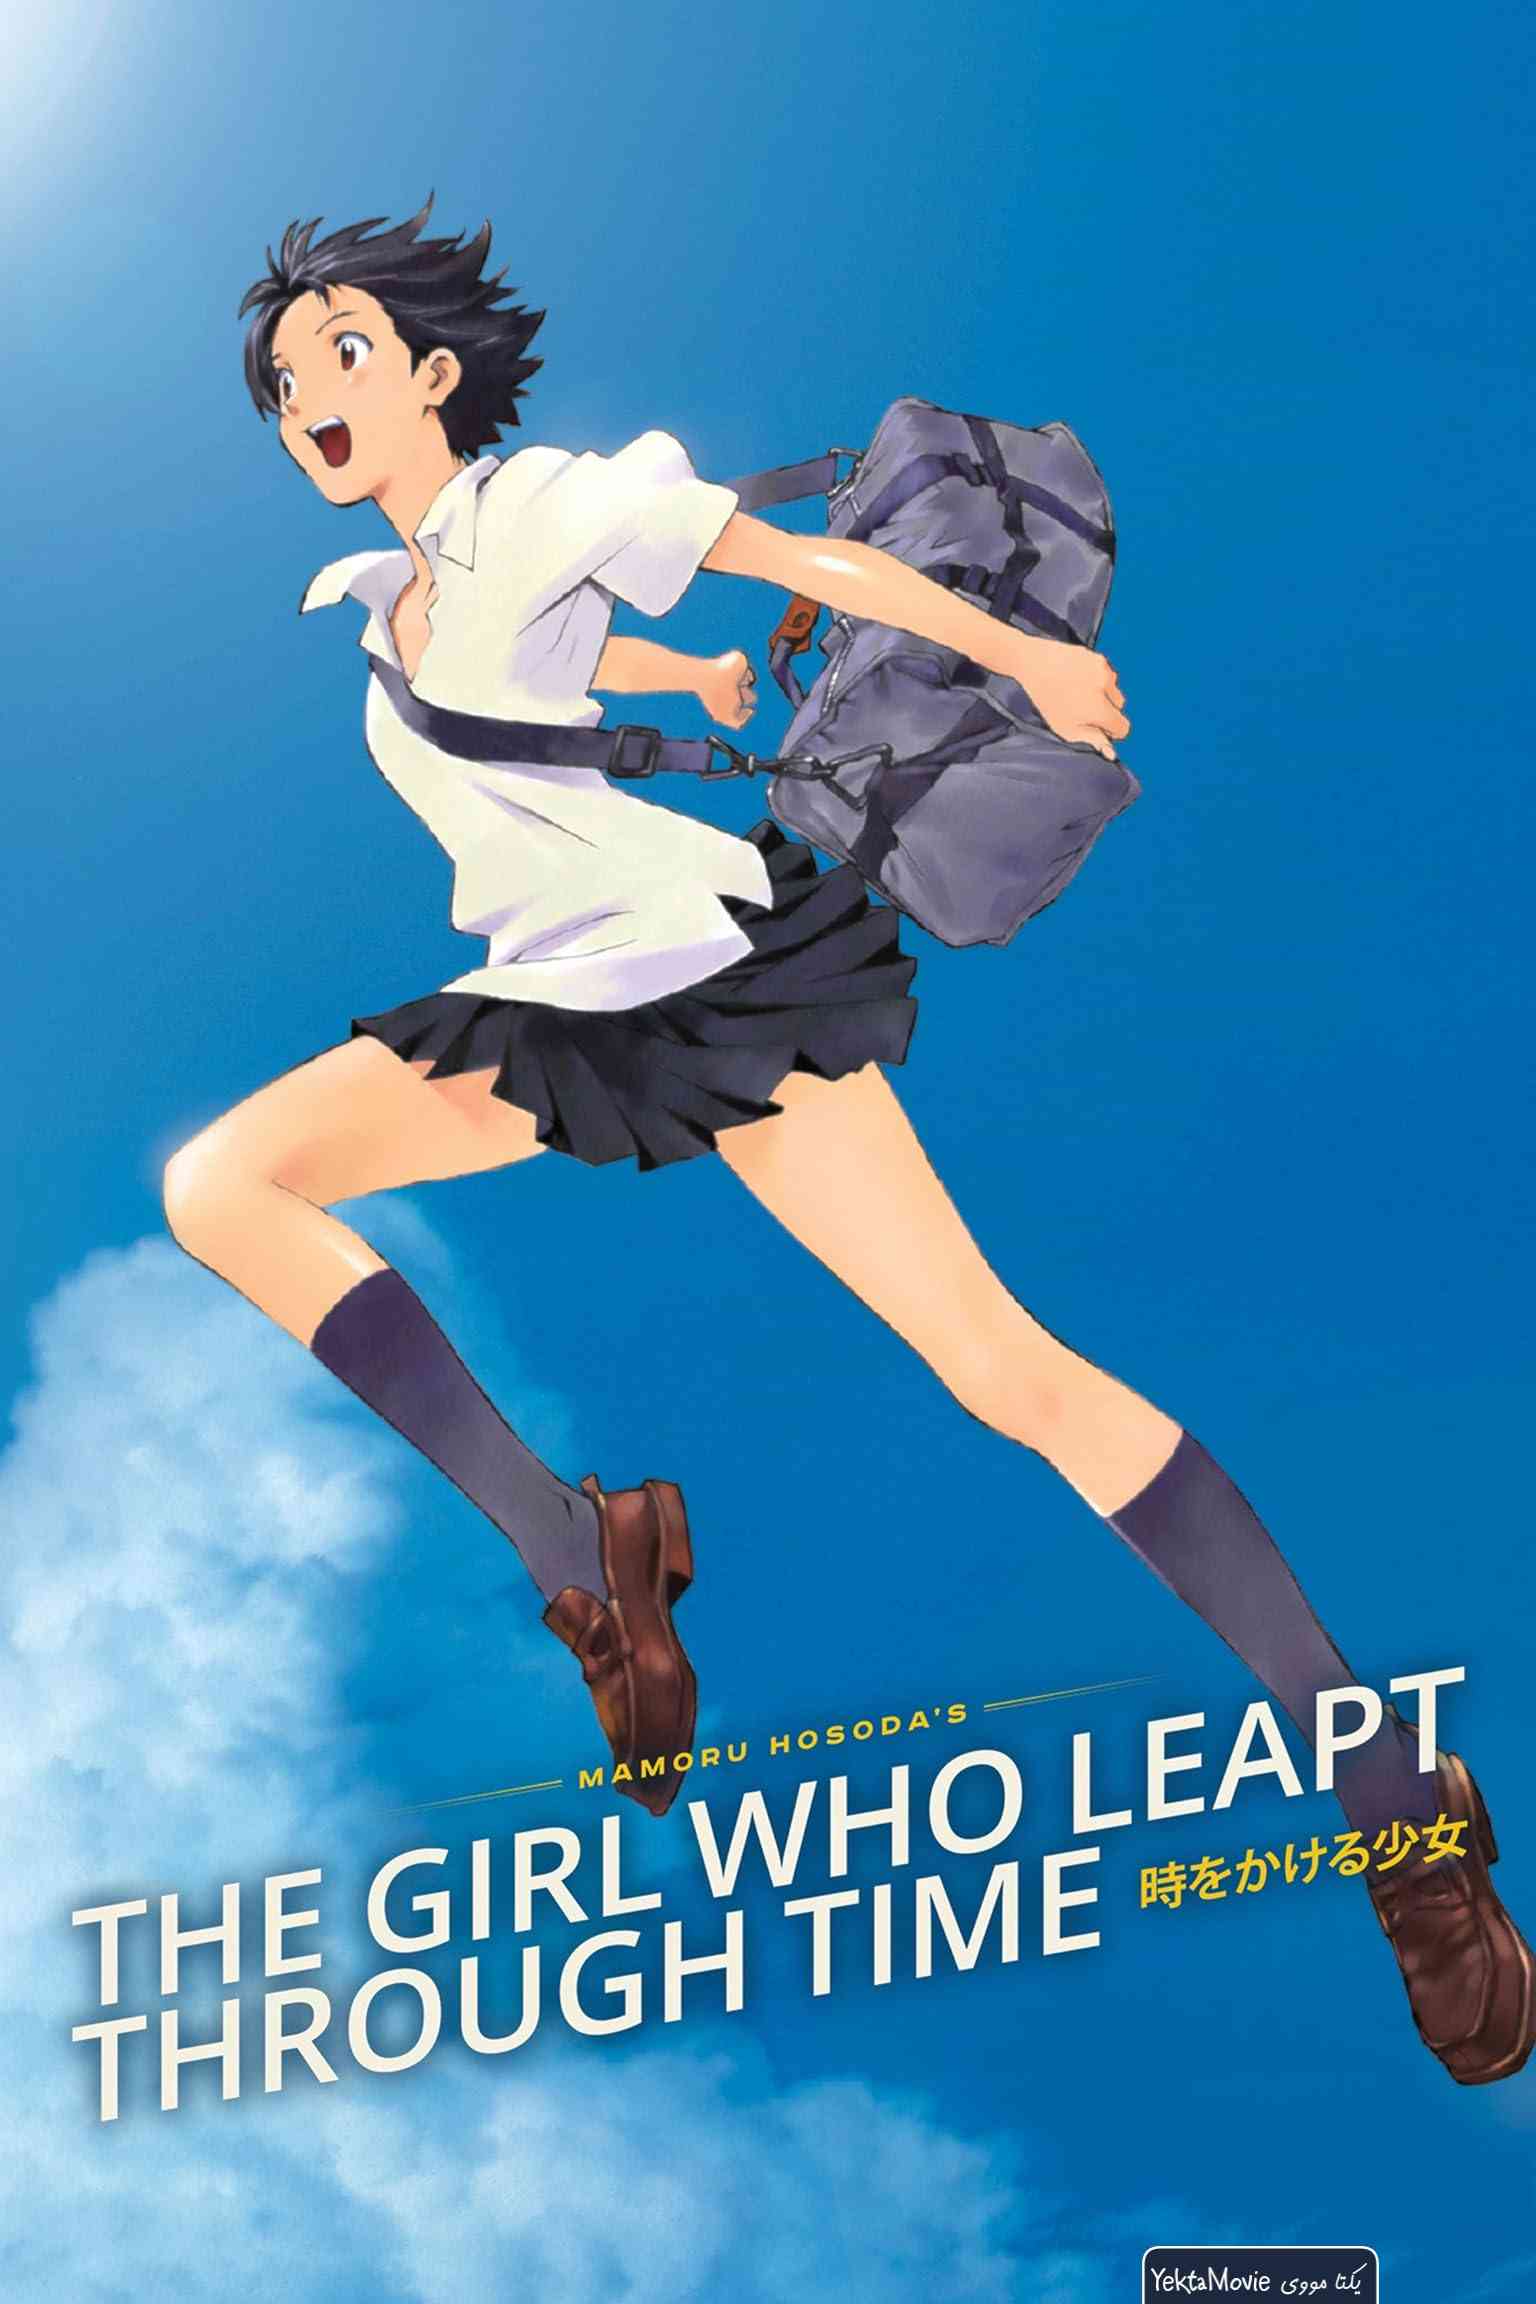 فیلم The Girl Who Leapt Through Time 2006 ( دختری که در گذر زمان پرش کرد ۲۰۰۶ )